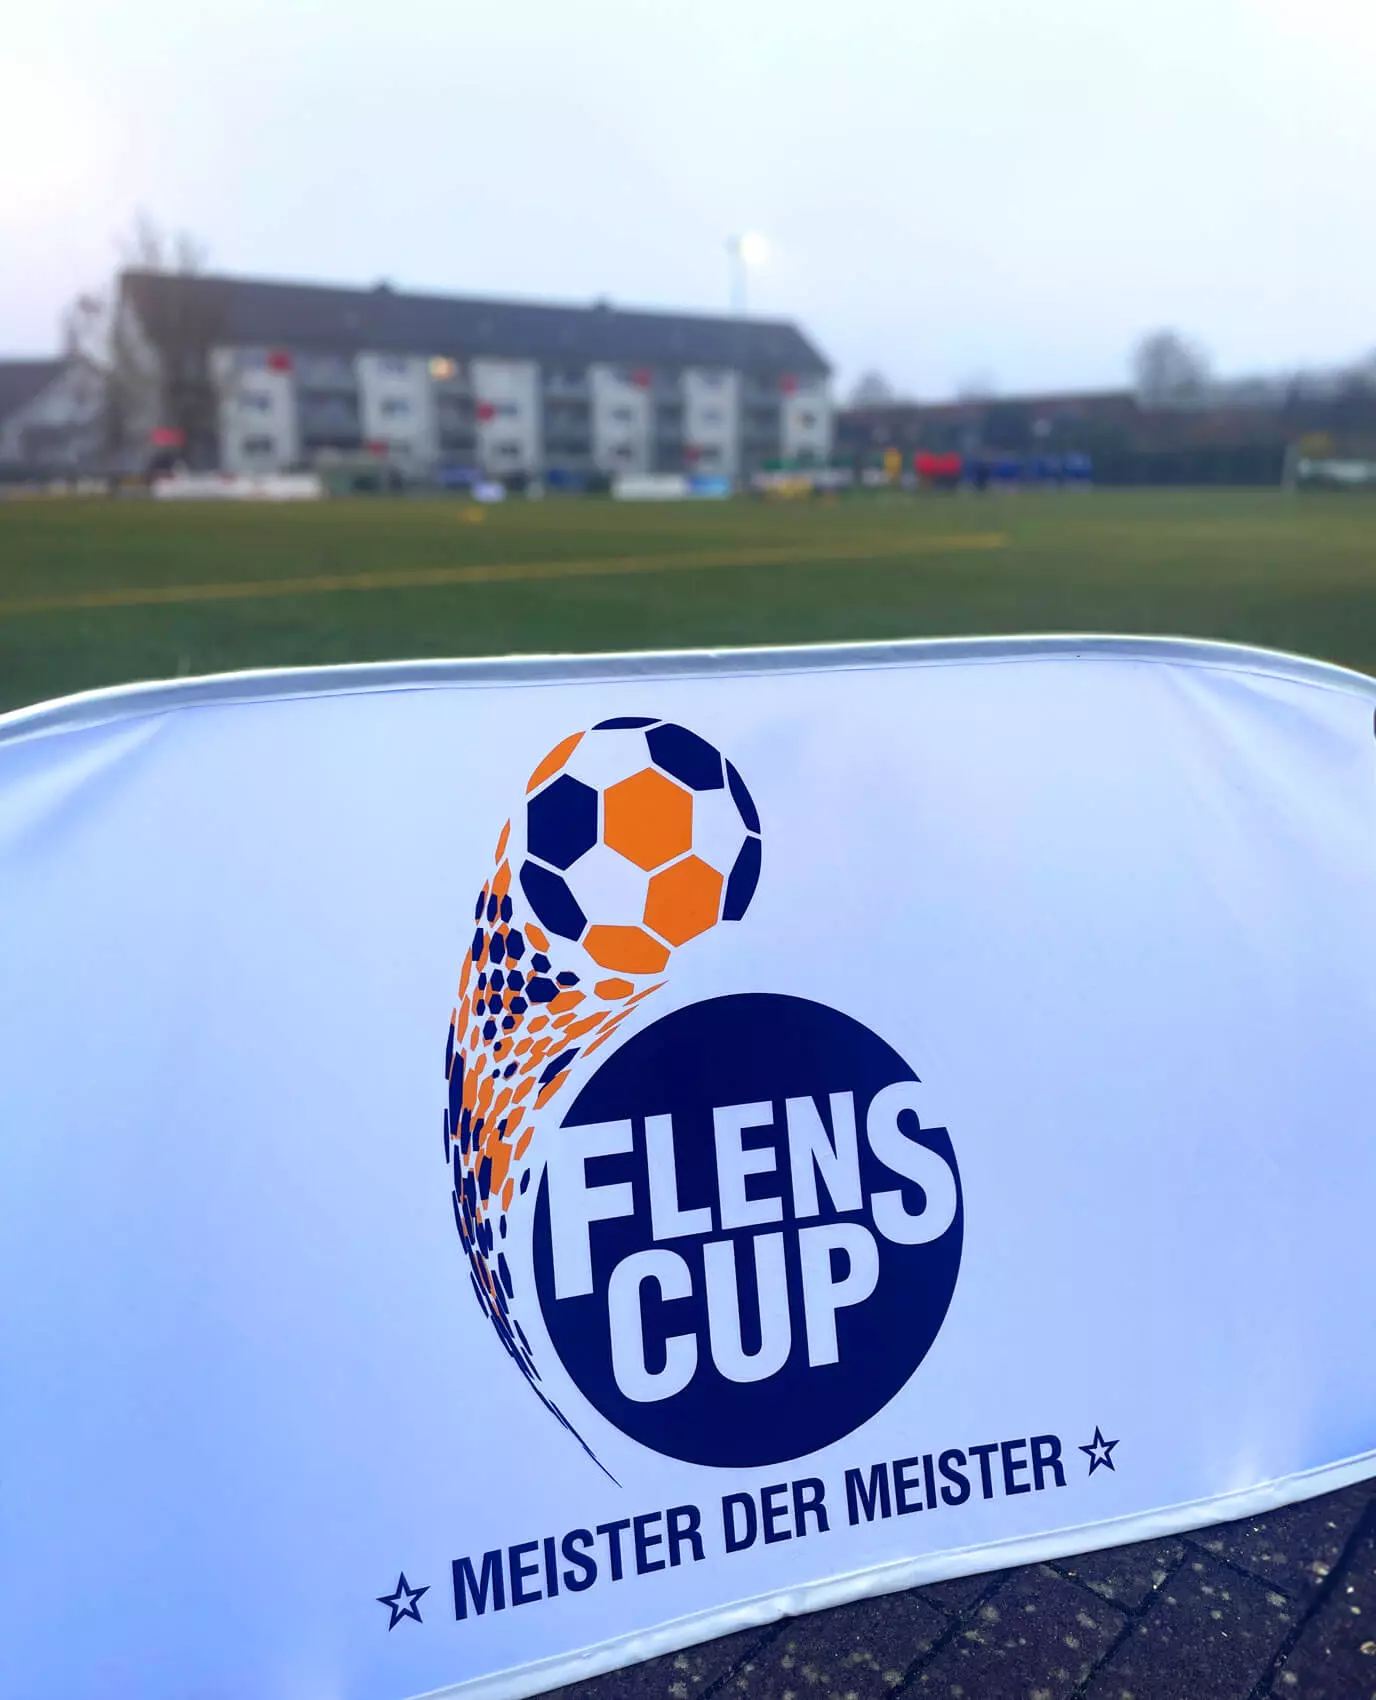 Logo vom FLENS CUP Meister der Meister auf einer Bande vom Fußballfeld.